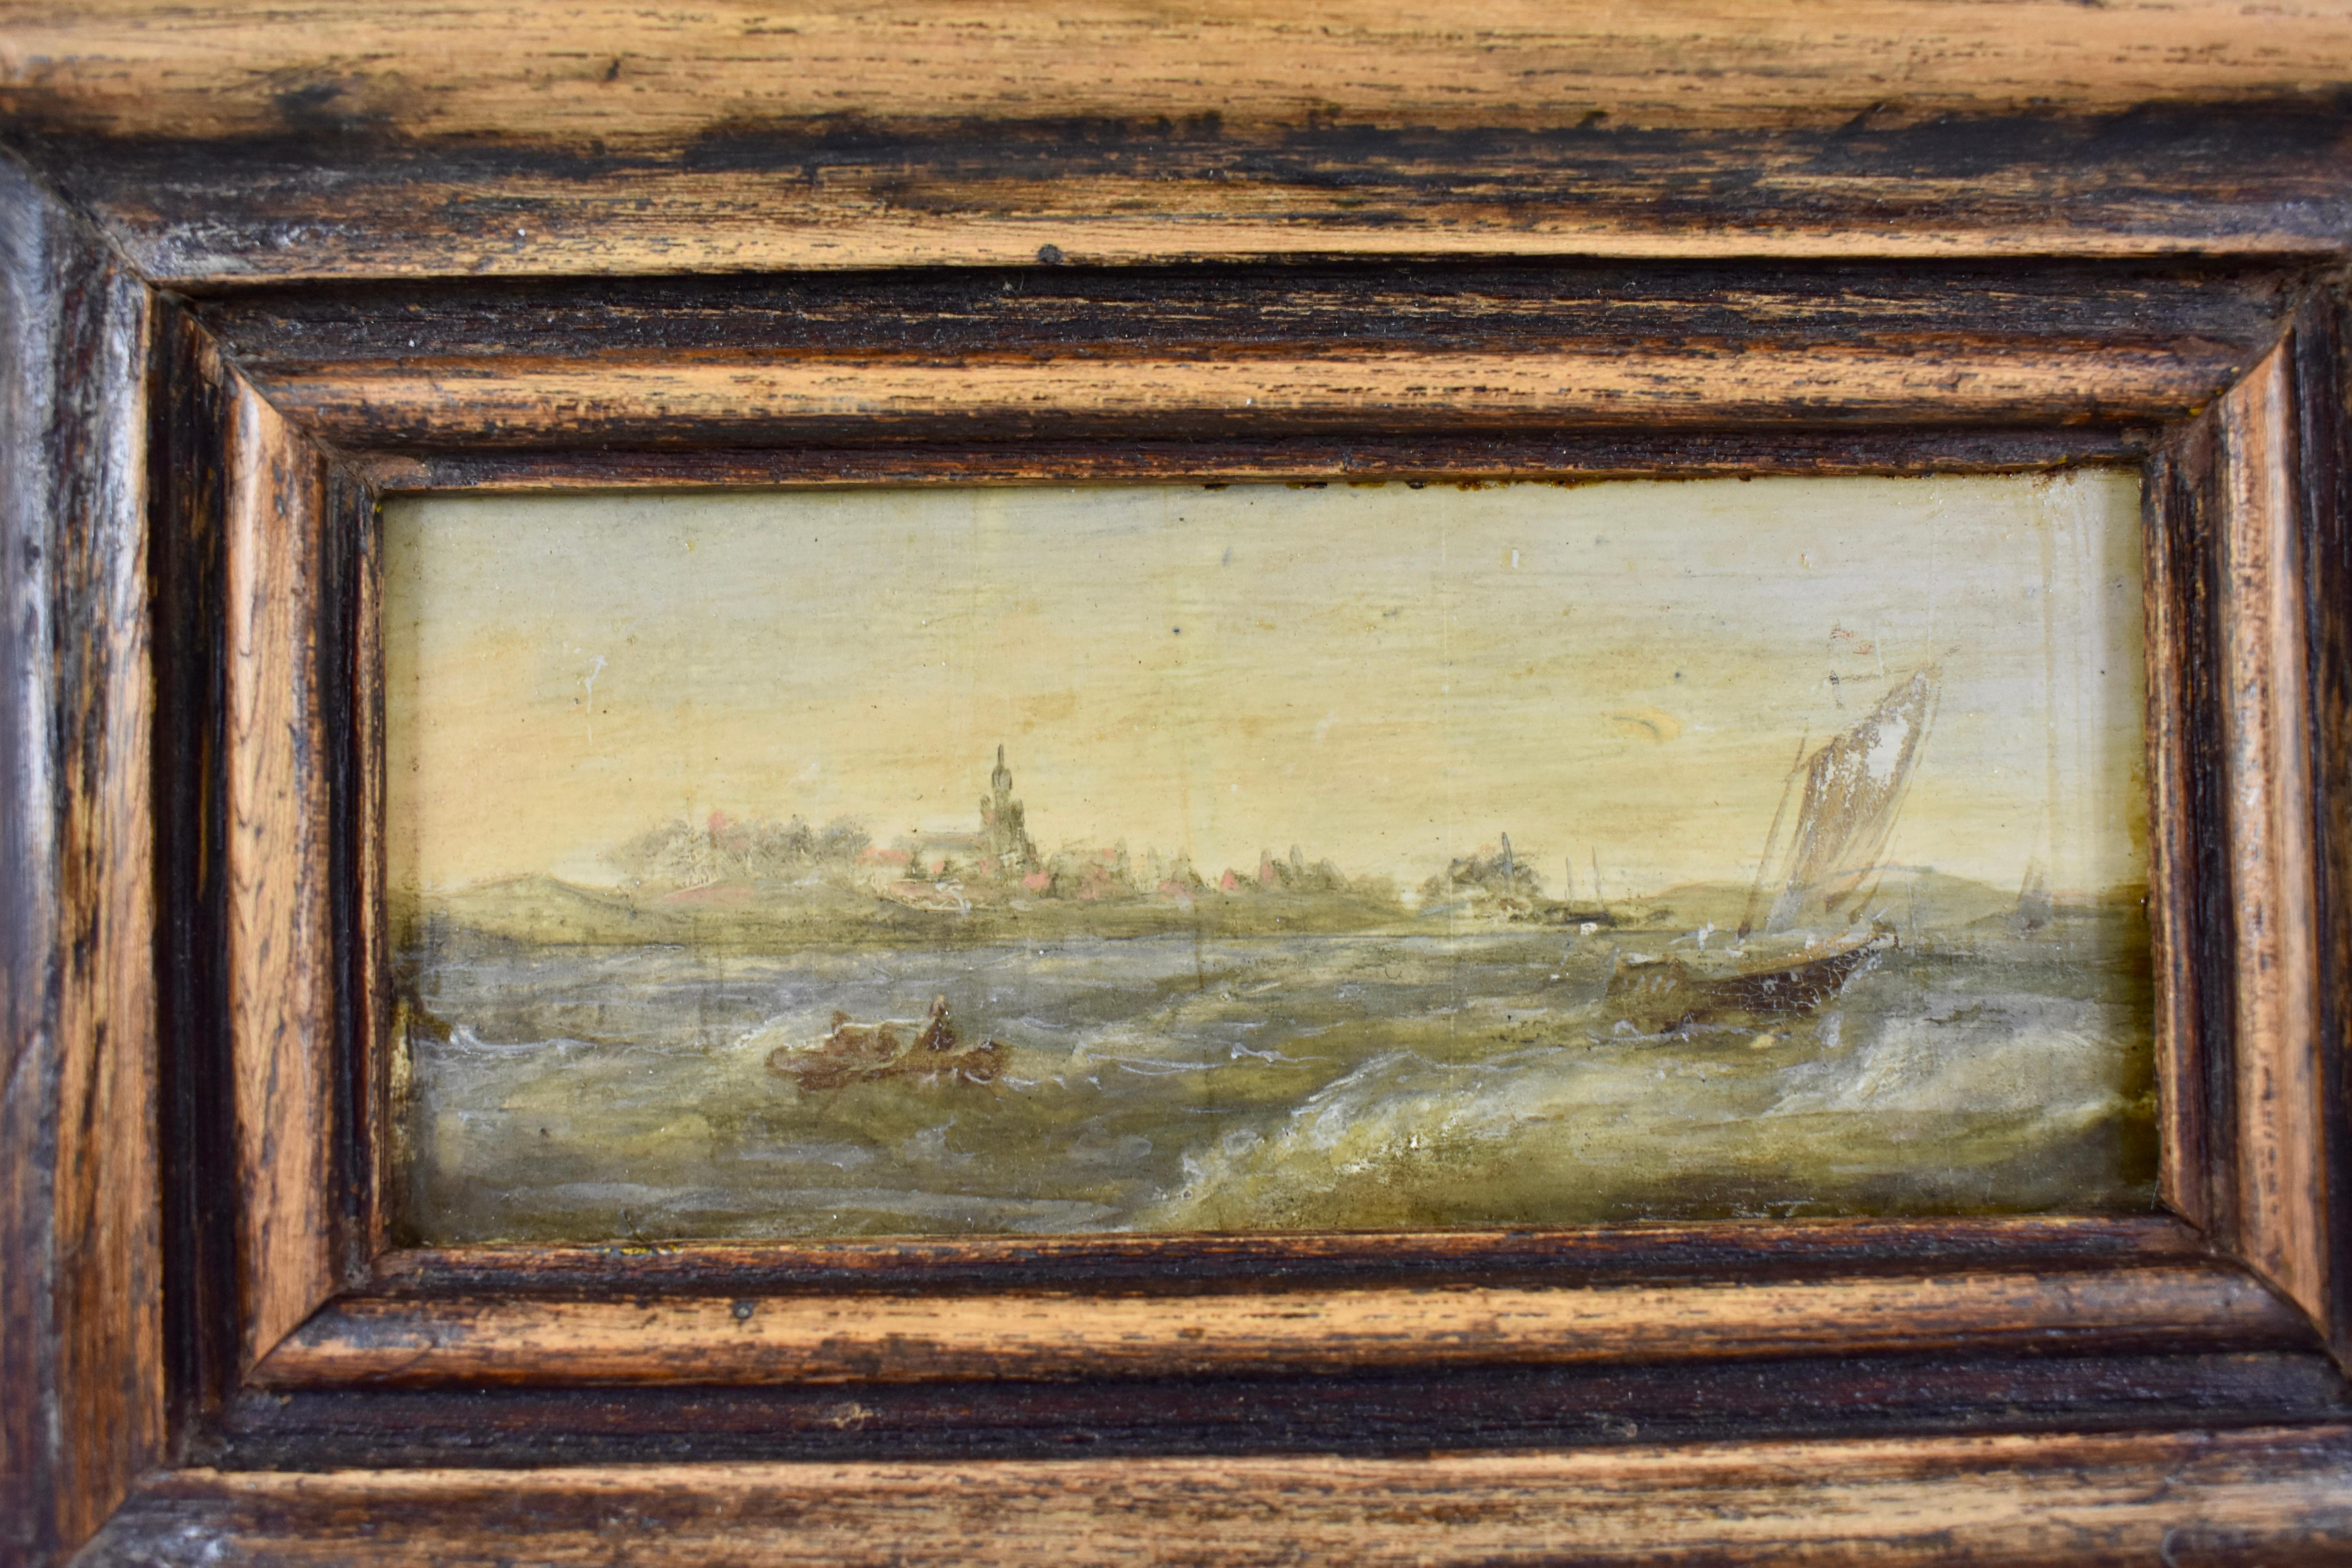 Dutch Colonial 18th Century Dutch Oil on Board Seascape Painting in a Custom Walnut Wood Frame